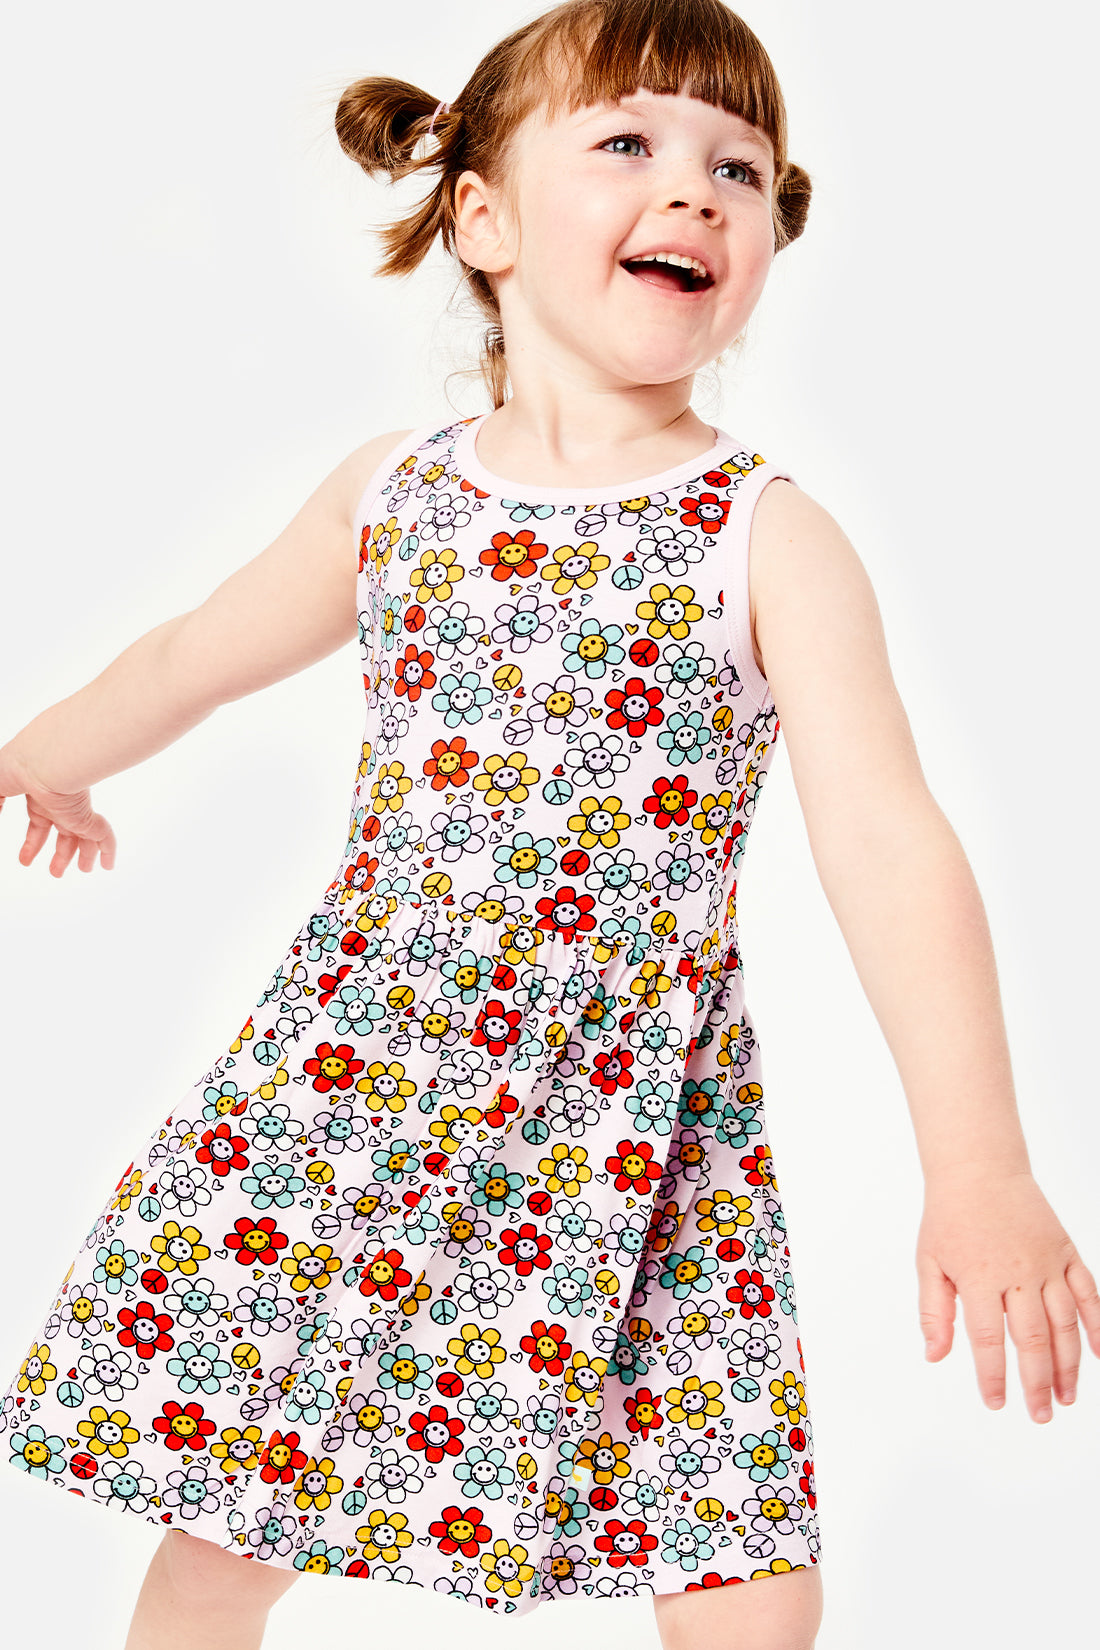 Stretchy Sleeveless Twirl Dress - Smiley Flowers